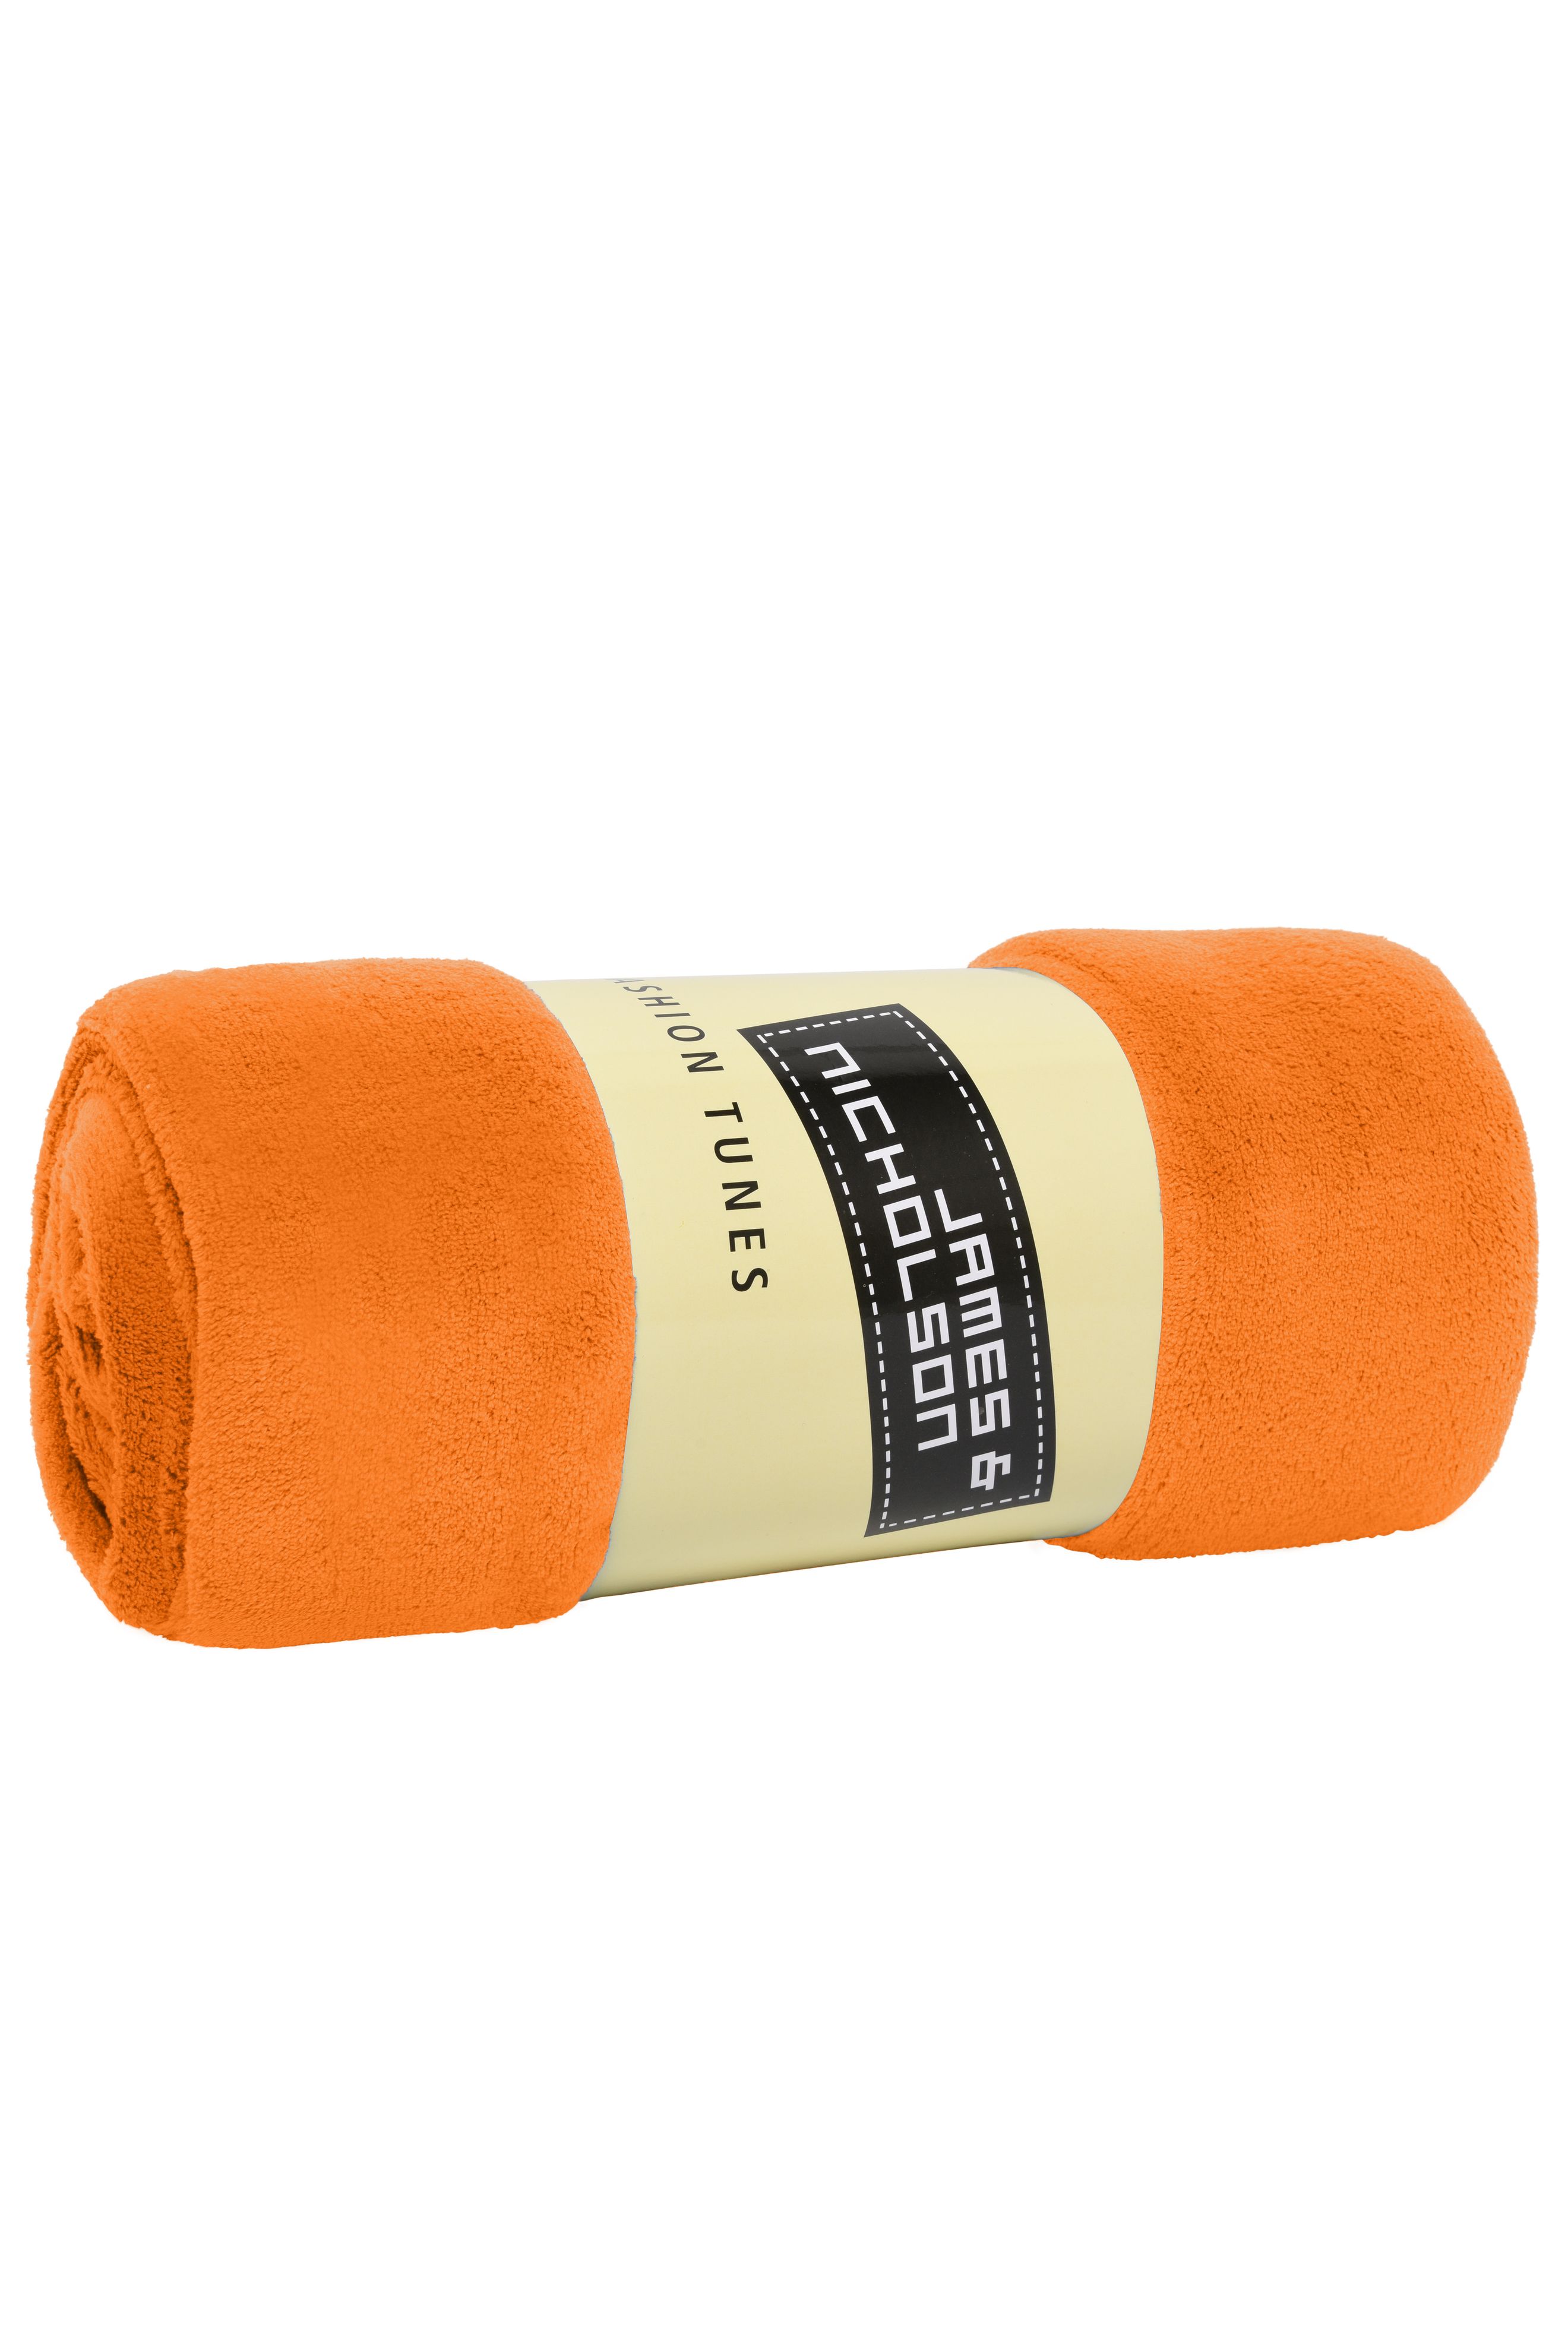 Flauschige Microfaser-Decke 120 x 160 cm James & Nicholson® orange